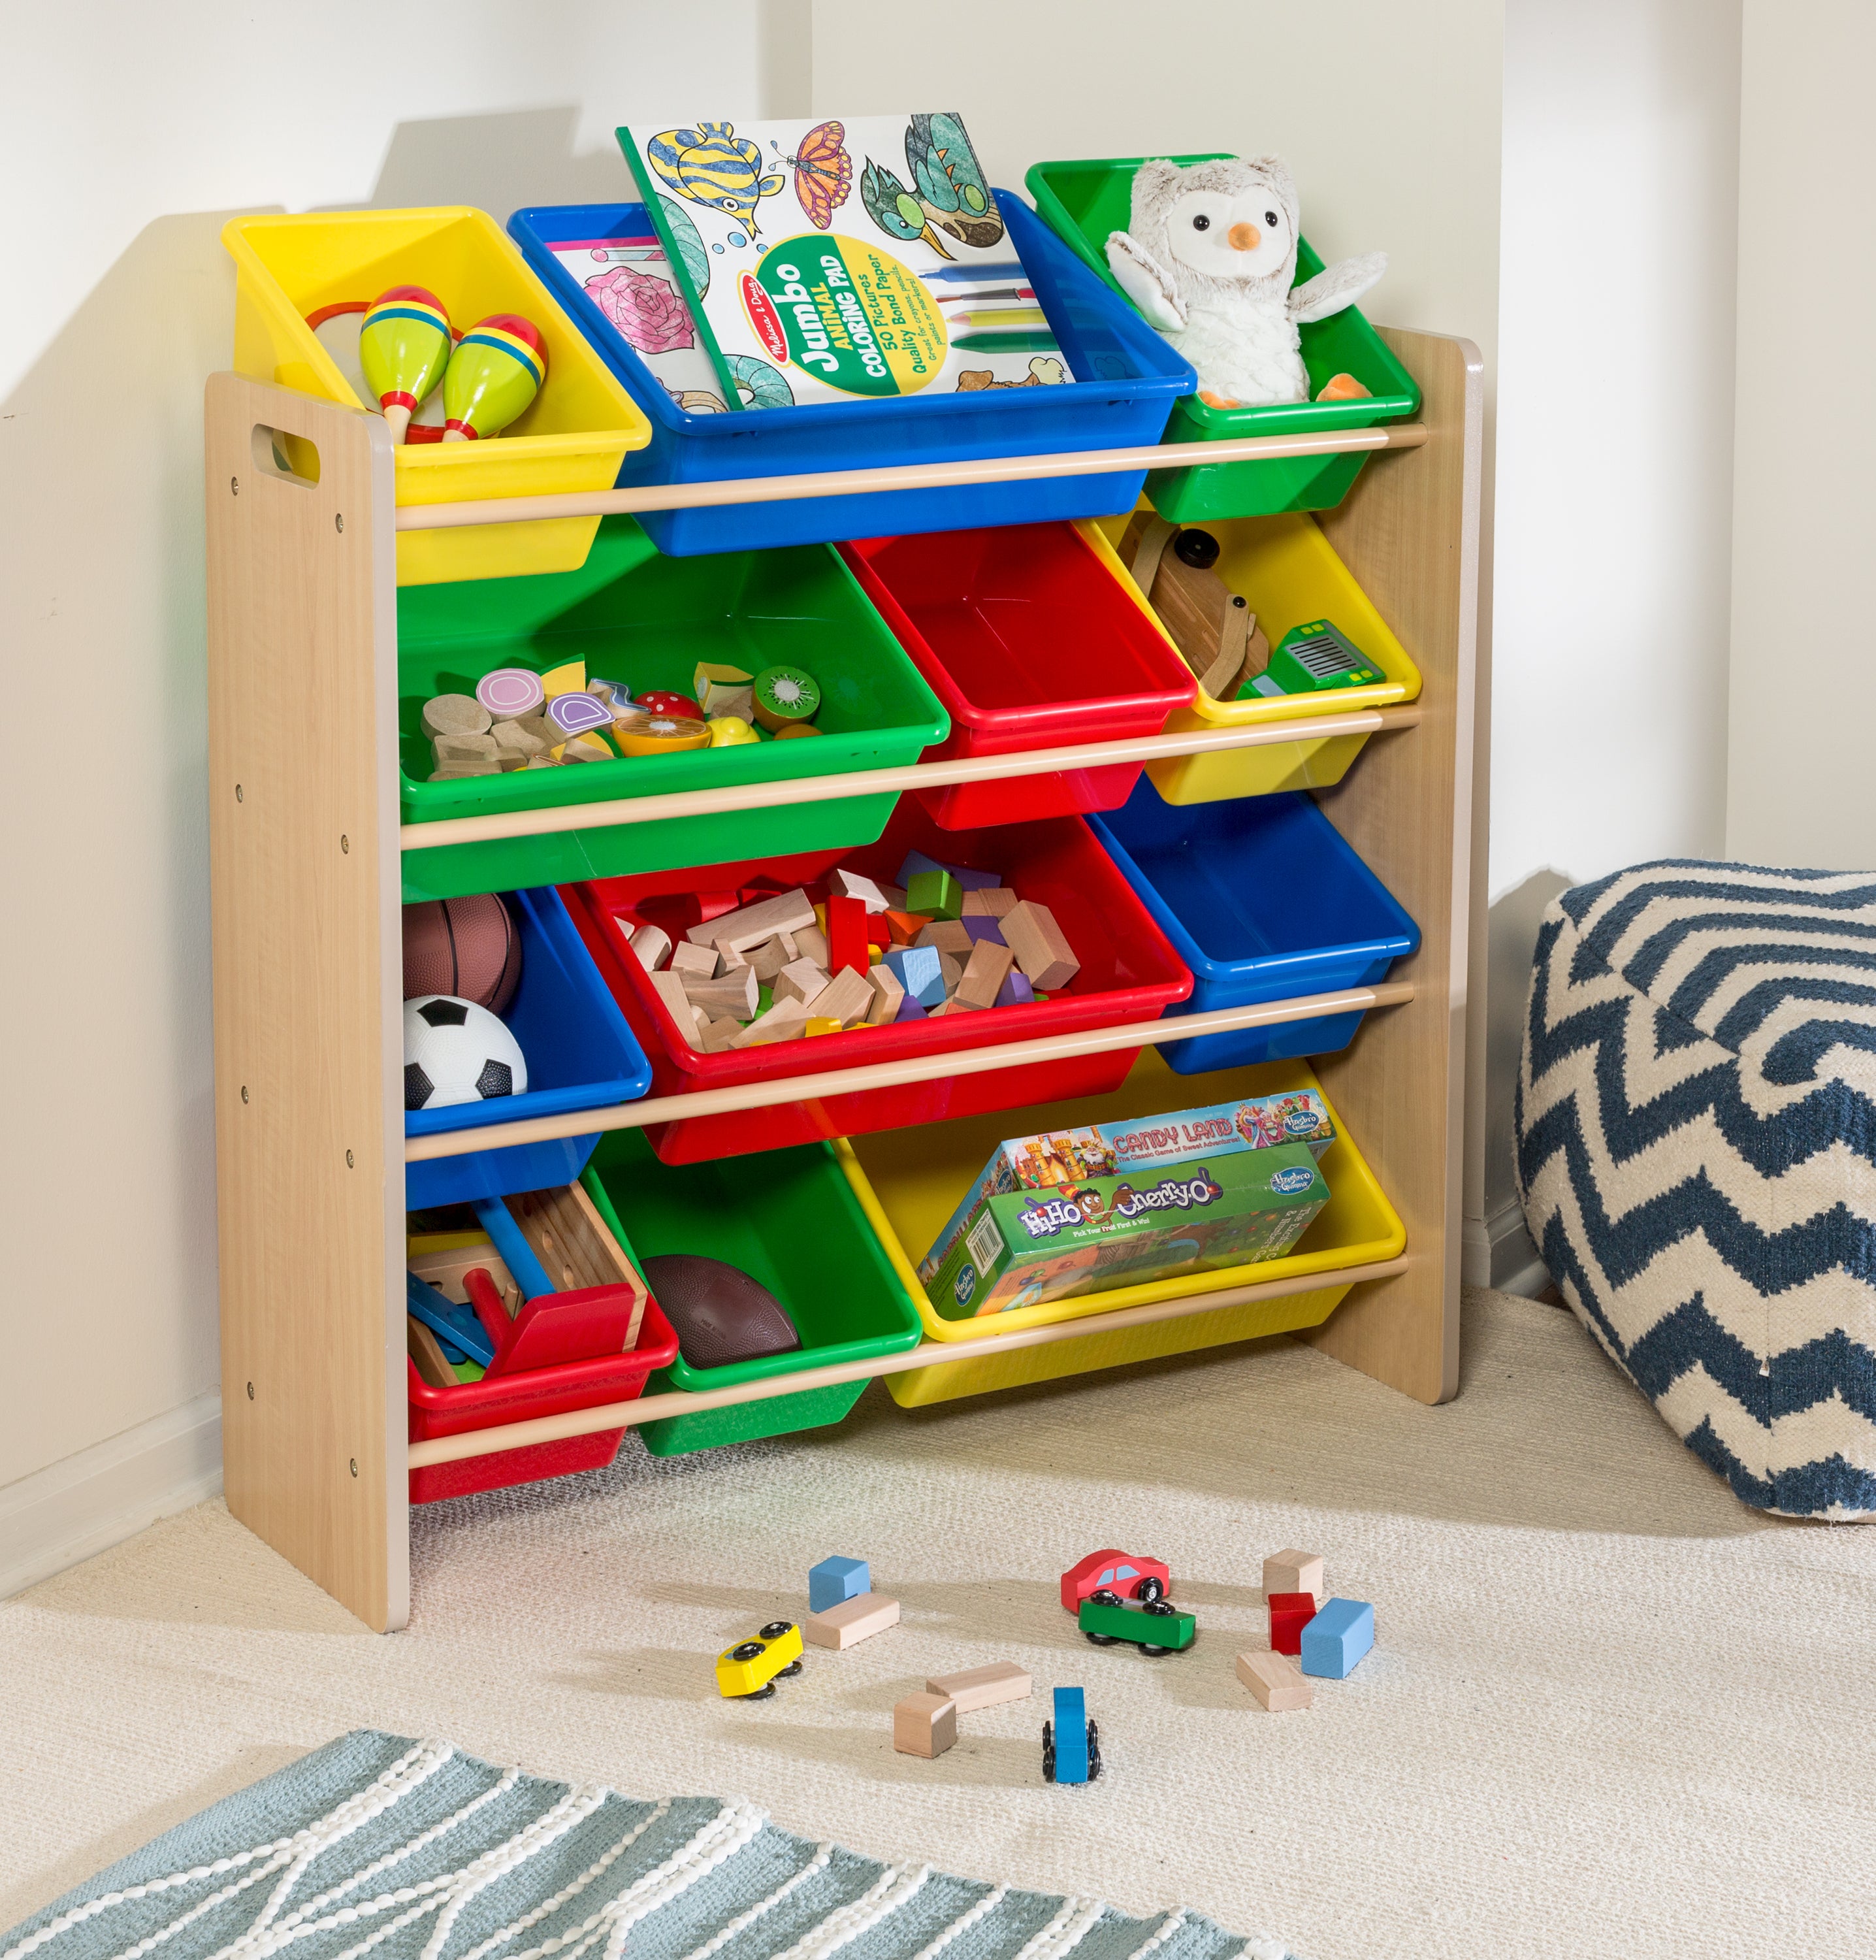 Toy Storage Organizer for Kids, 3-Tier Multi-Purpose Storage Bins